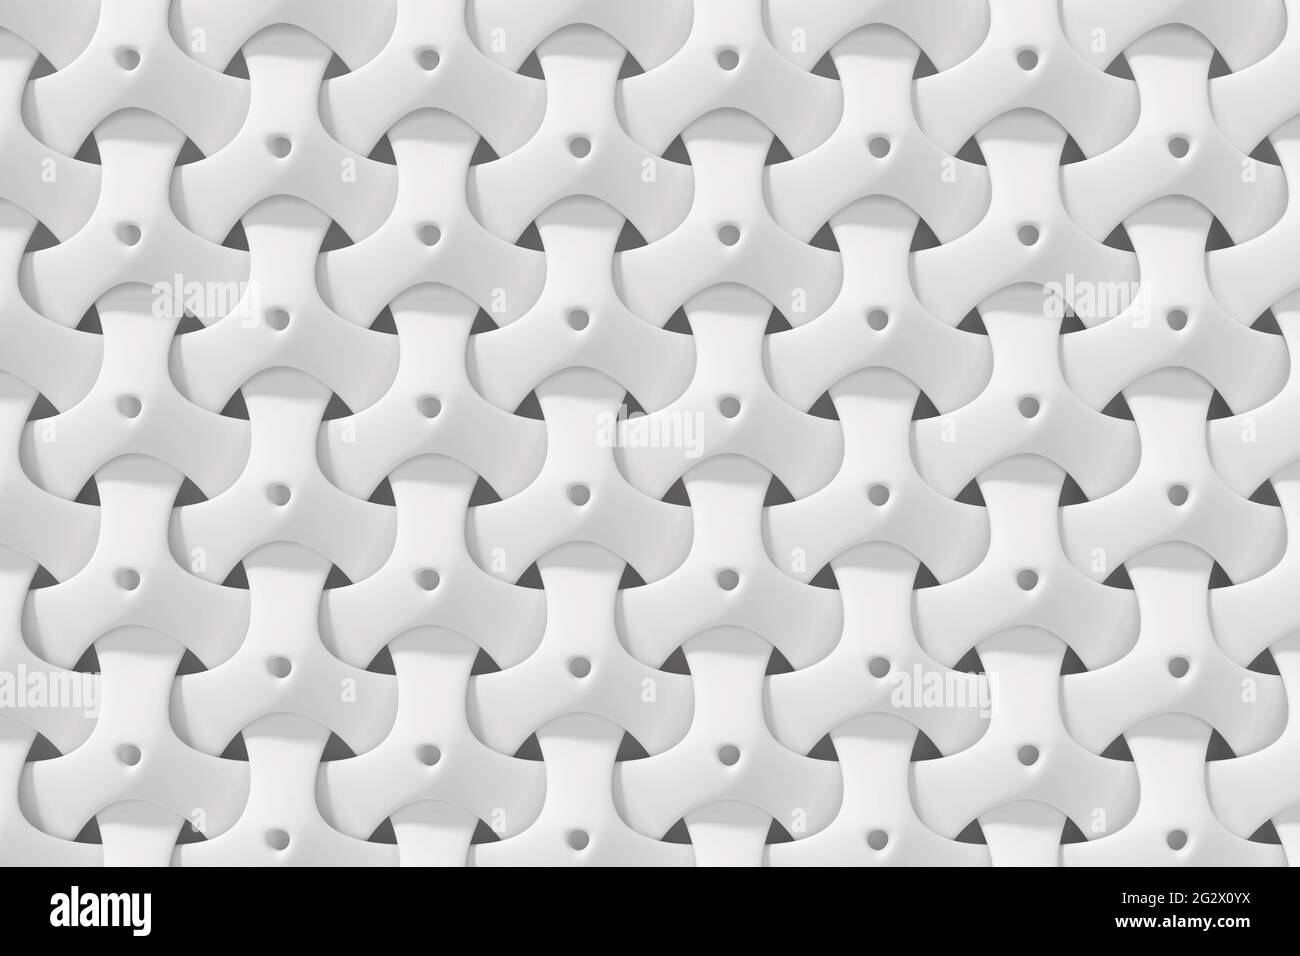 Weißer Hintergrund mit abstrakt verflochtenen geometrischen Gitternetzlinien - 3d-Rendering Stockfoto